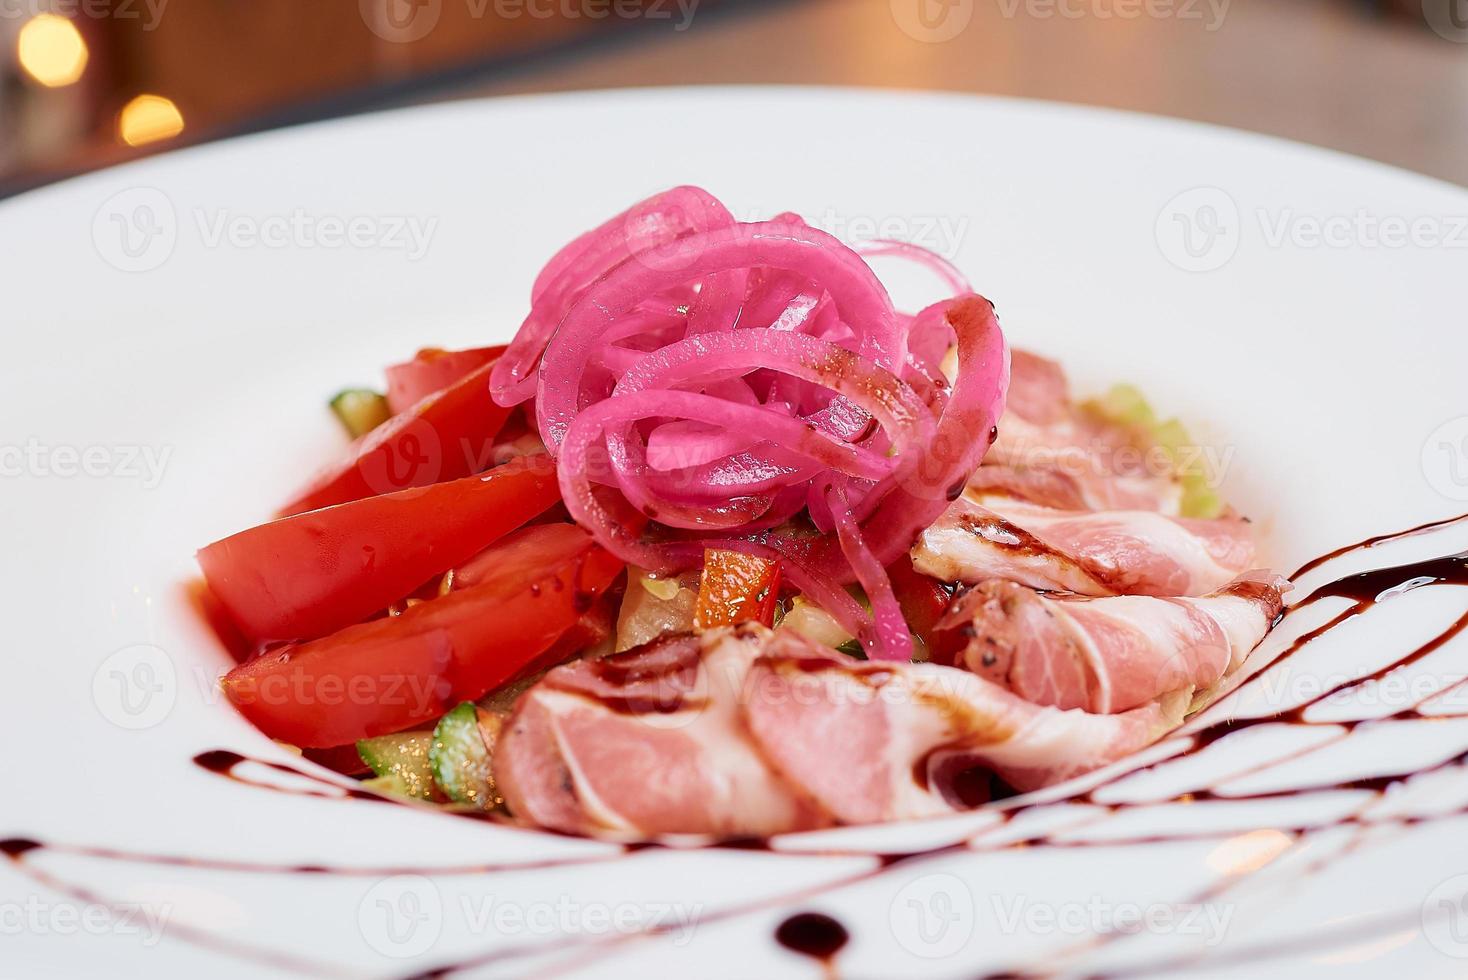 une photo d'une salade de menthe et dolendwitz dans un restaurant sur la table